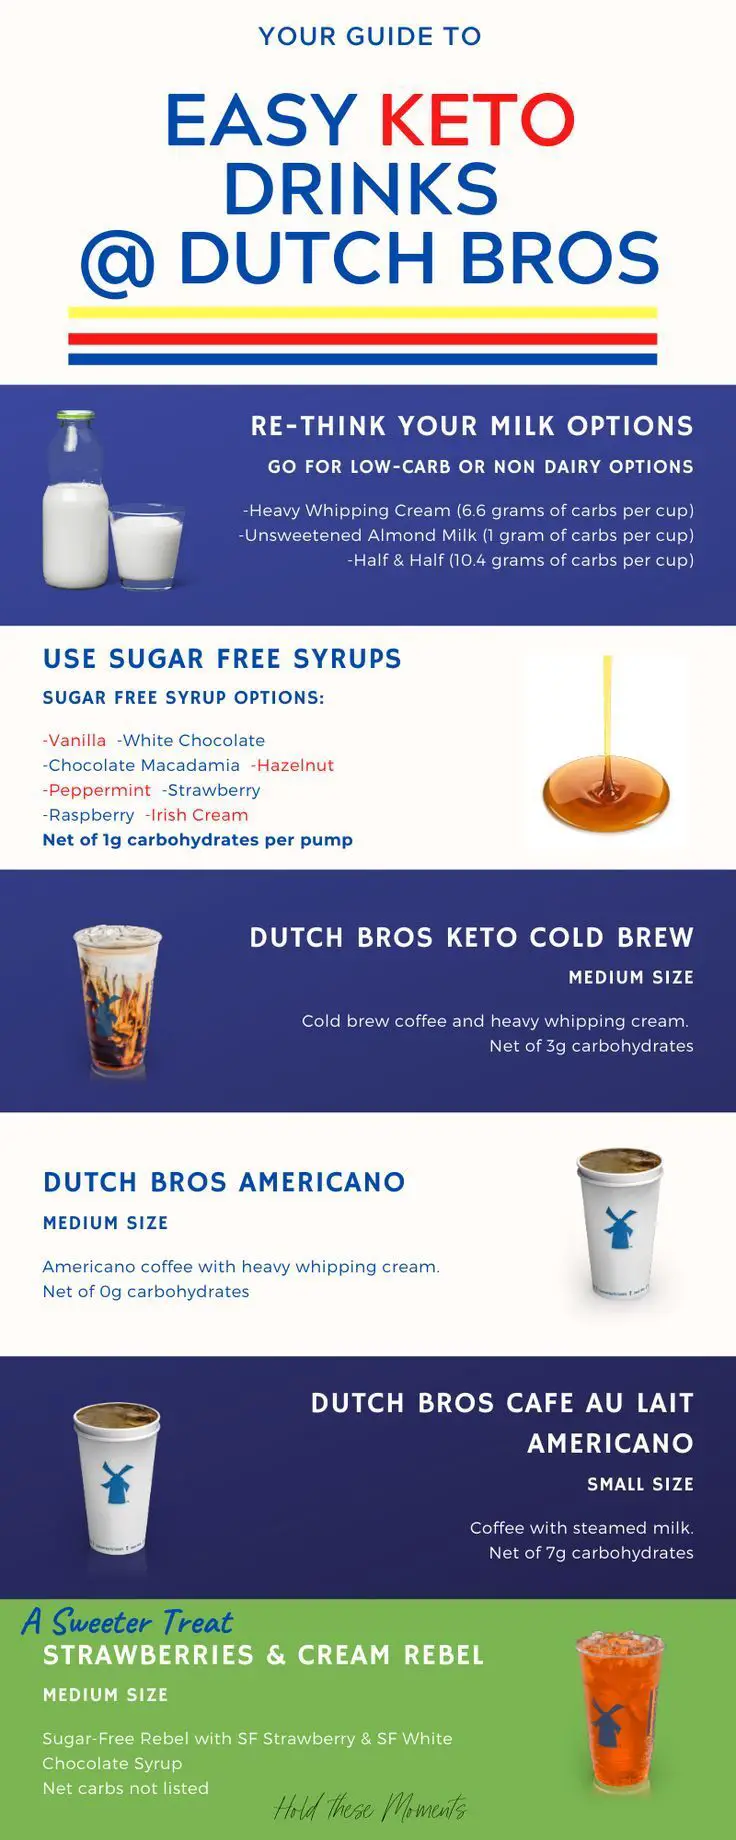 Dutch Bros Keto Drinks A Comprehensive Guide